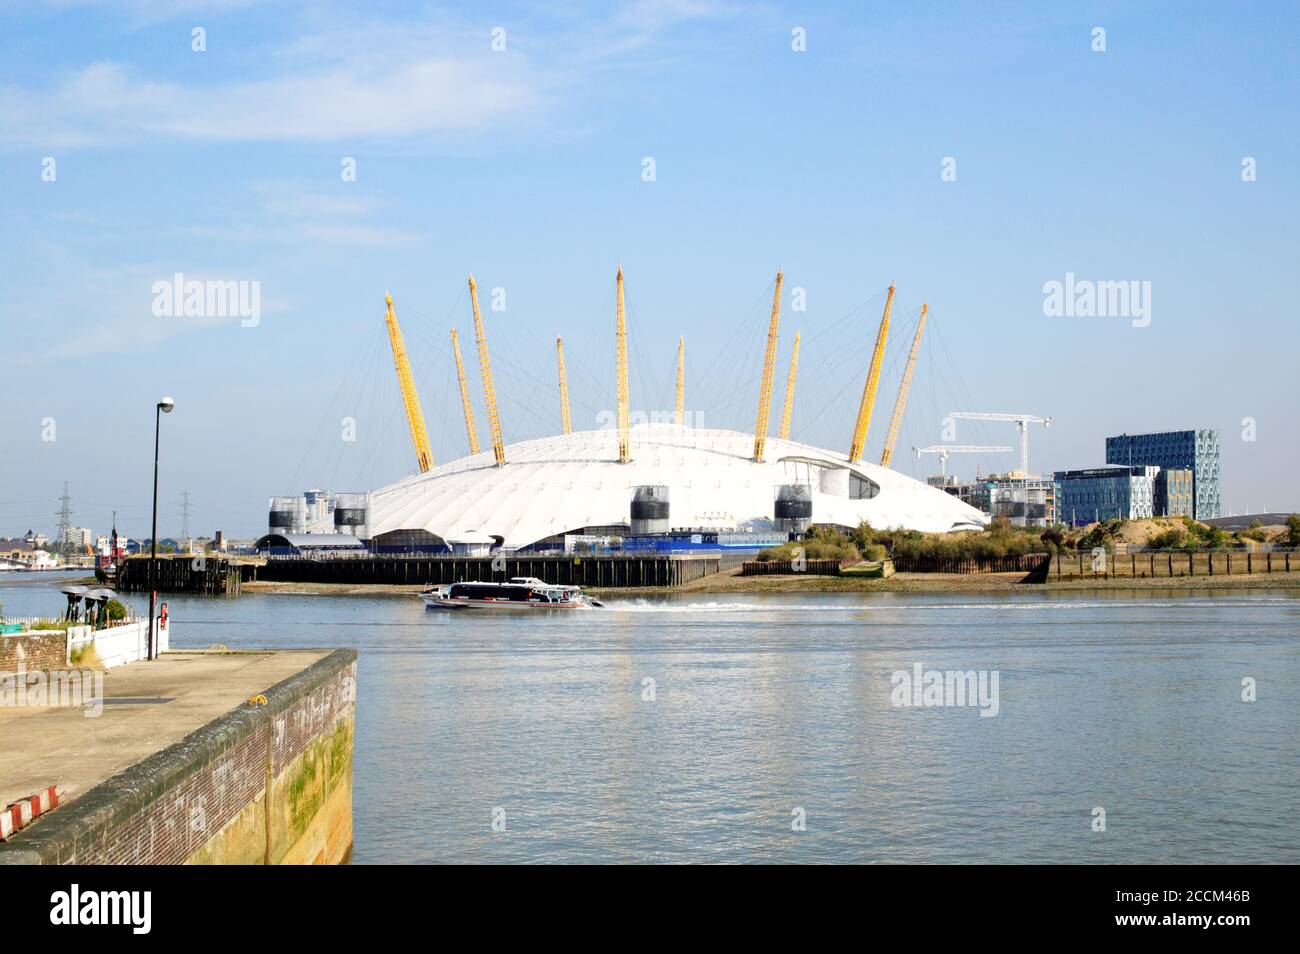 London, UK, Sep 27, 2009 : der Millenium Dome an der Themse bekannt als das O2 Concert Hall Theater beliebt für seine Live-Musik-Acts Stock Foto im Stockfoto